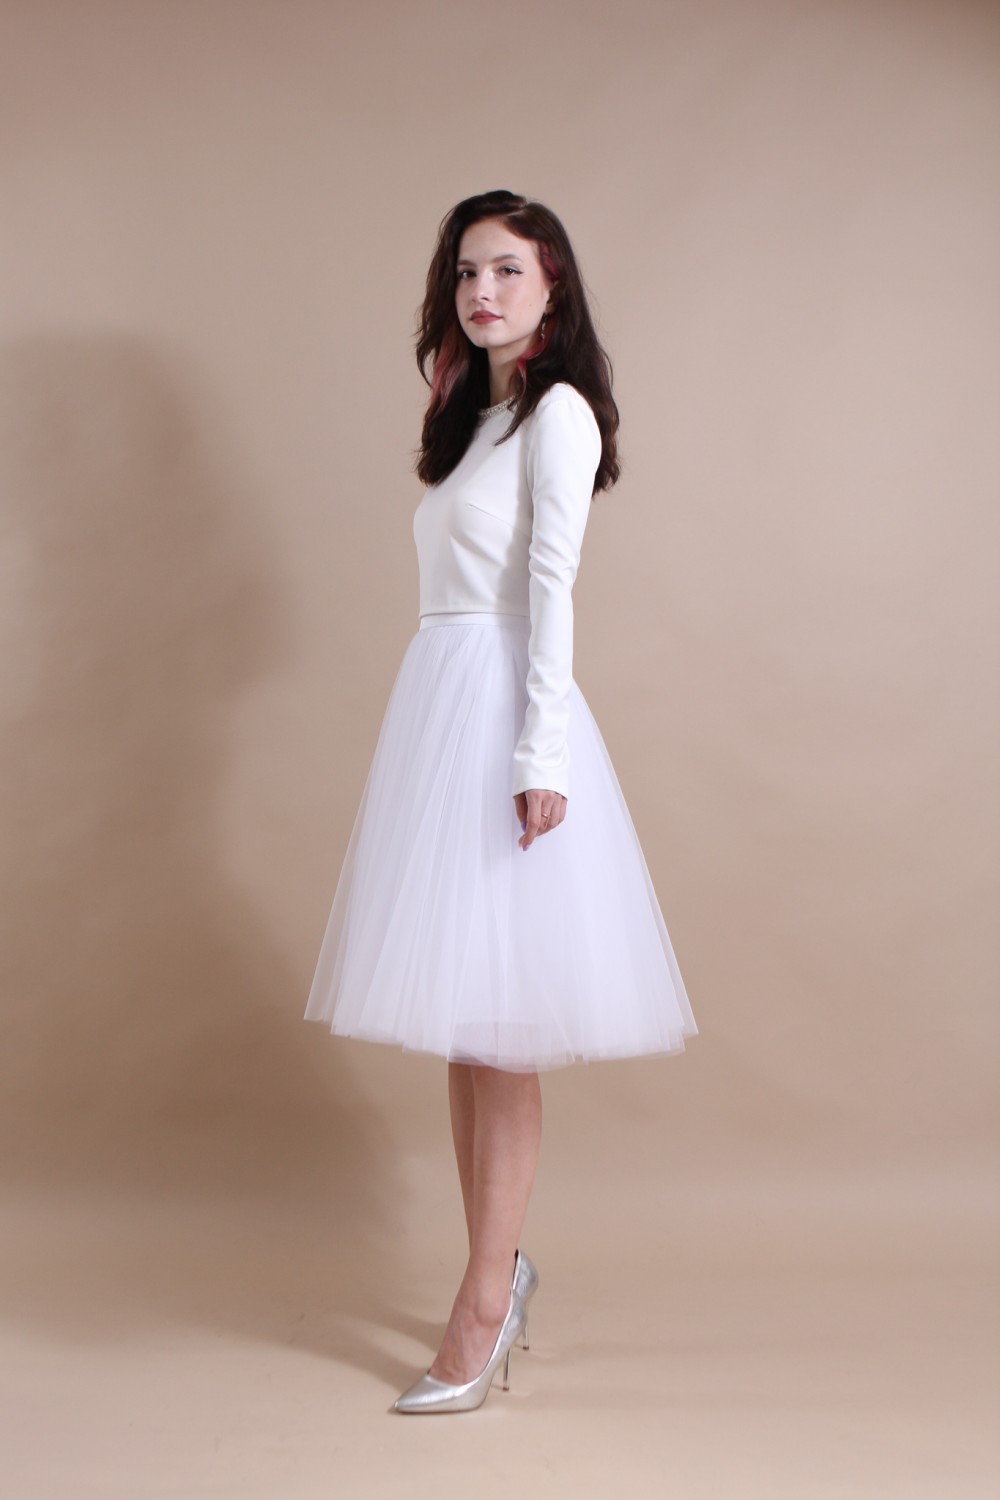 Пышная свадебная юбка-солнце из фатина (60 цветов)   Белая  - фото